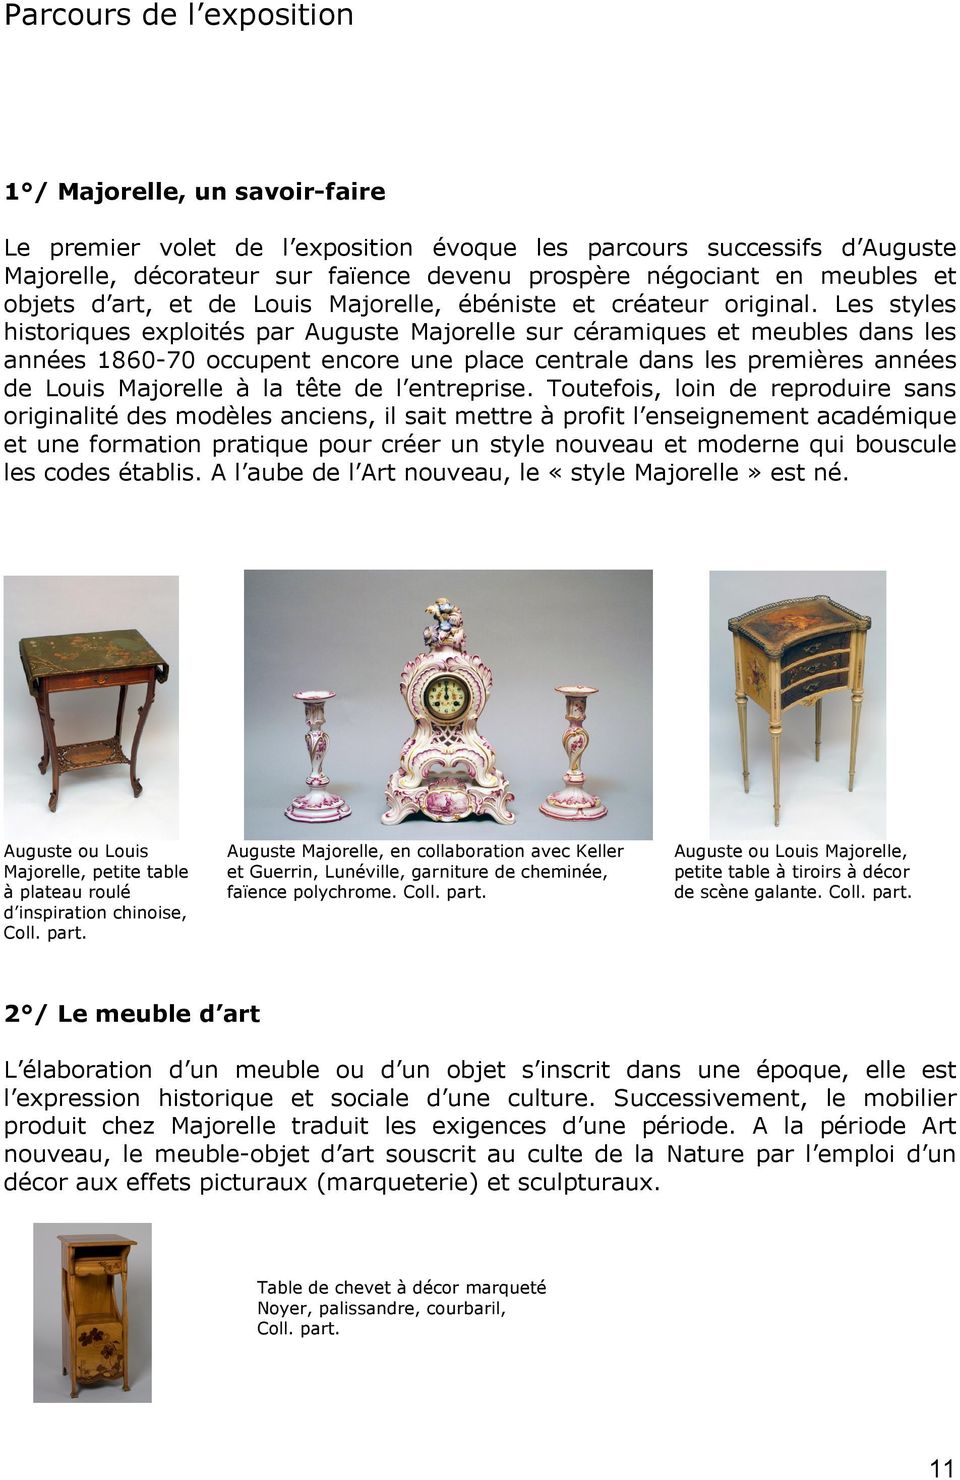 Les styles historiques exploités par Auguste Majorelle sur céramiques et meubles dans les années 1860-70 occupent encore une place centrale dans les premières années de Louis Majorelle à la tête de l